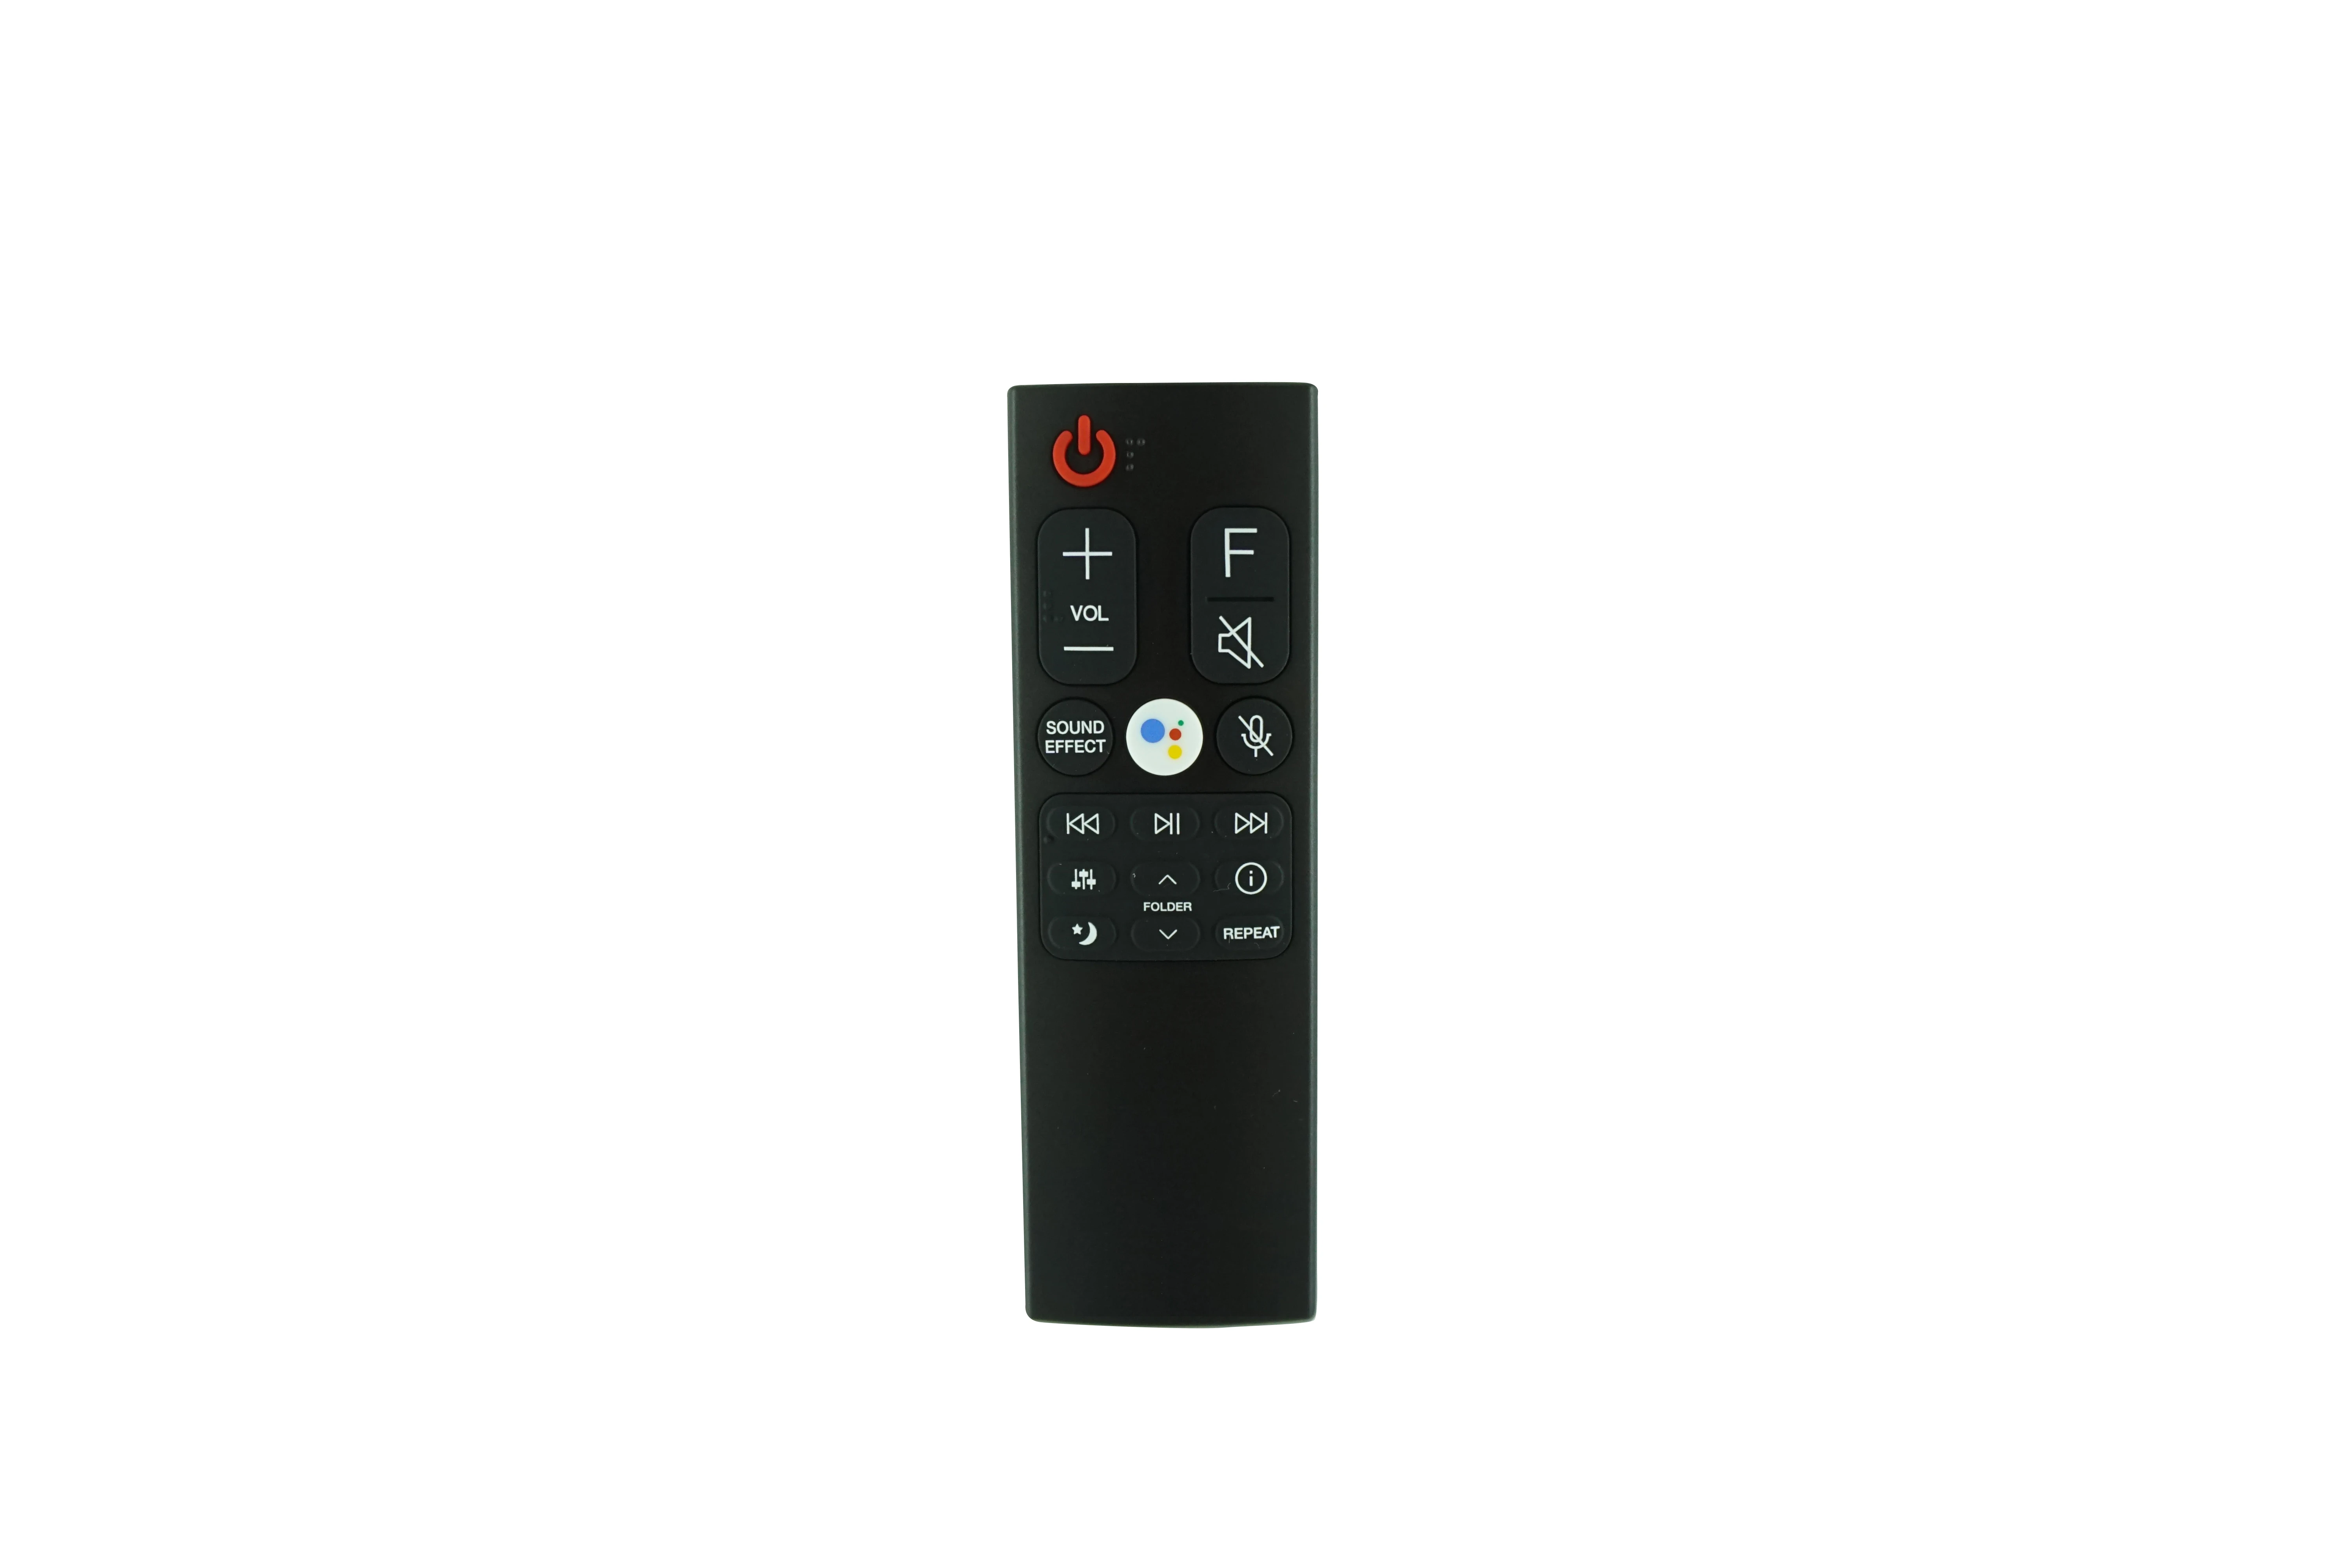 Remote Control For LG AKB75595321 SL10Y SL8YG SL9Y SL9YG SL10YG 5.1.2 Channel Hi Res Audio Sound Bar soundbar system|Remote Controls| - AliExpress